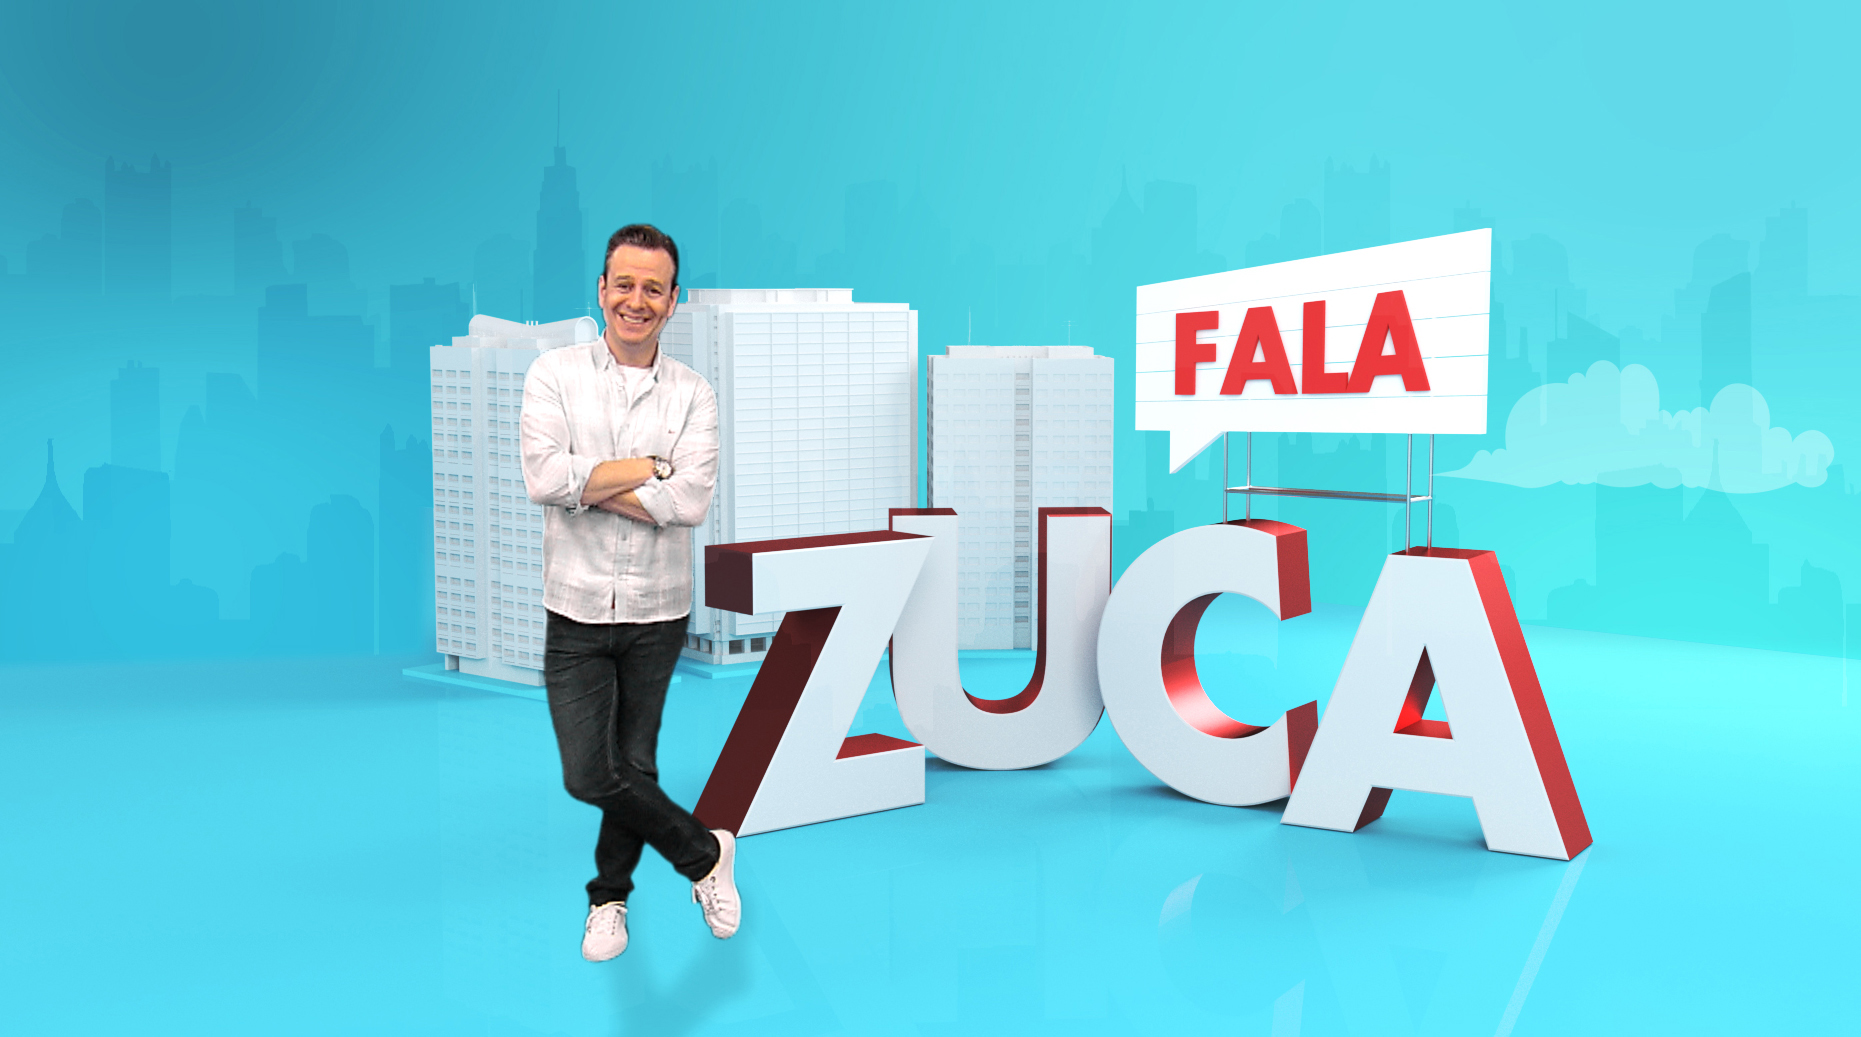 Fala Zuca teve vida curta na RedeTV! (Divulgação)